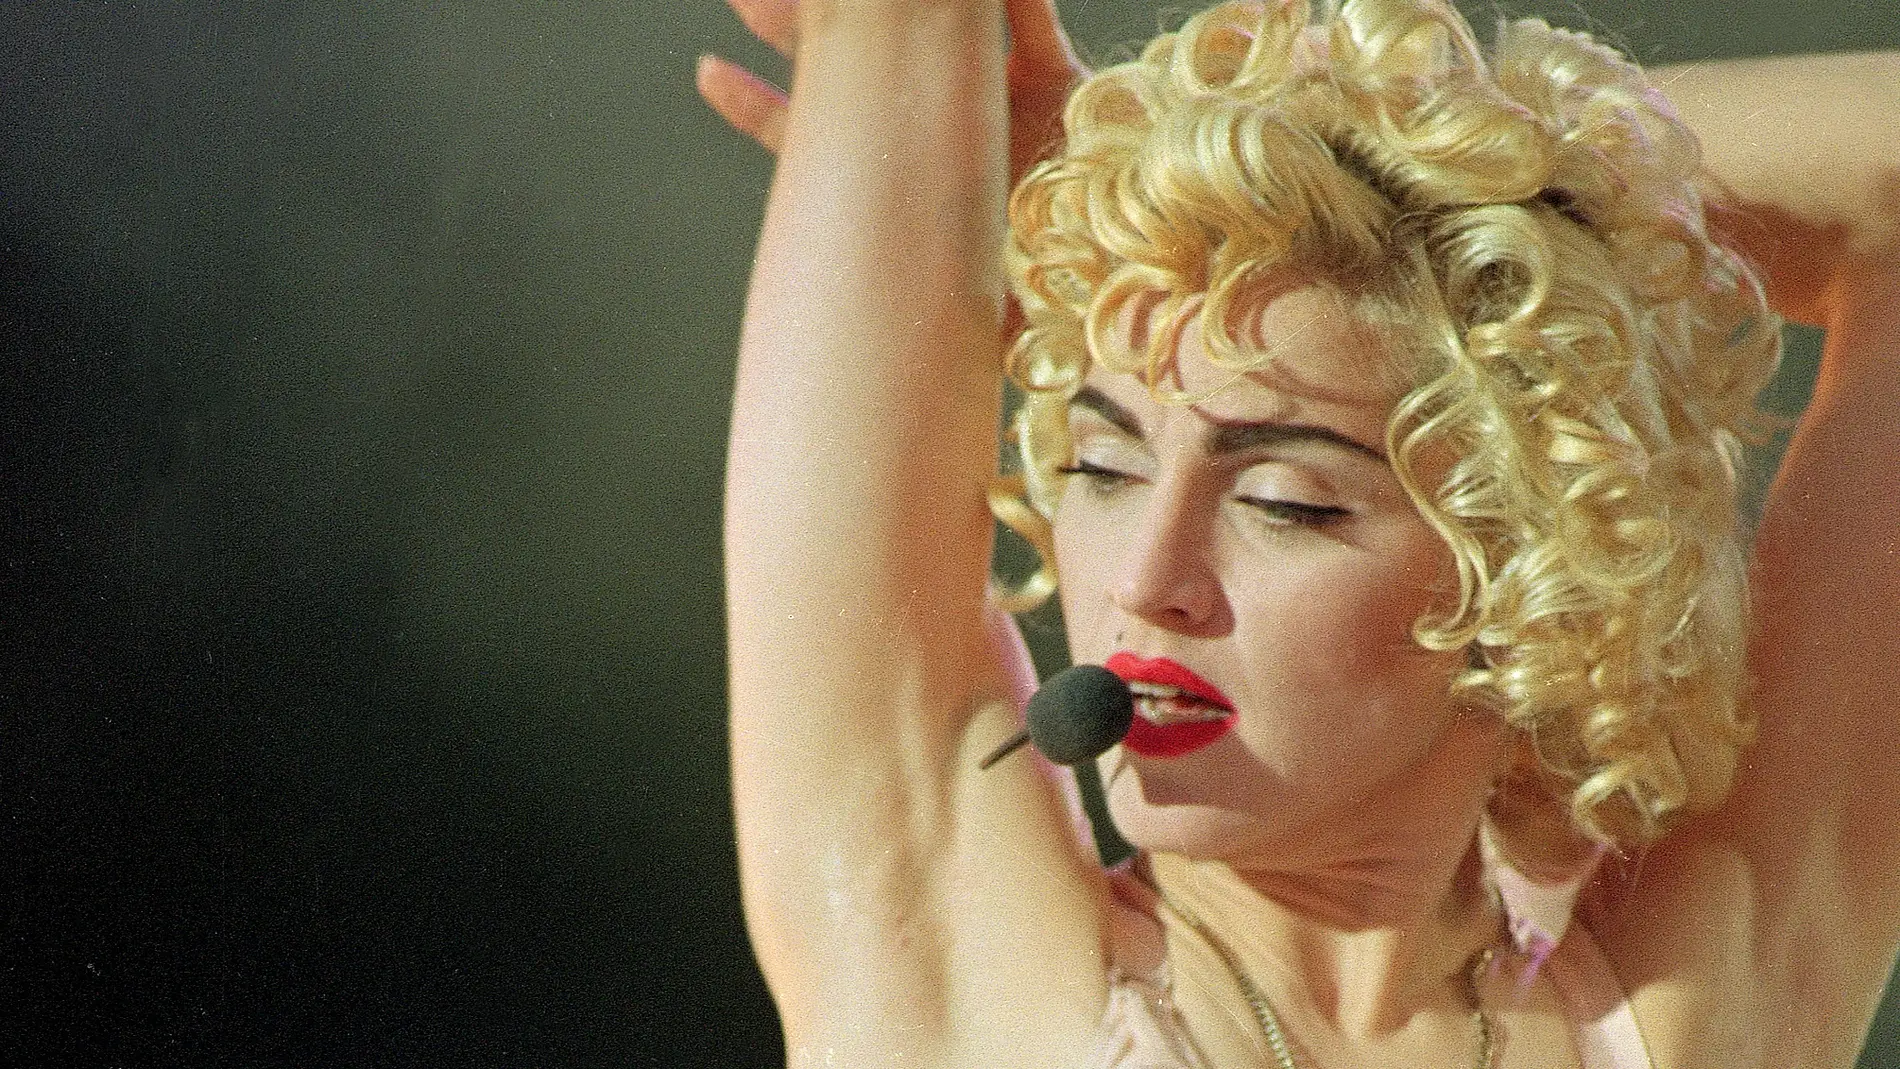 Del descubrimiento de la masturbación a actrices que suenan para ser la Ambición Rubia: lo que se sabe del biopic de Madonna